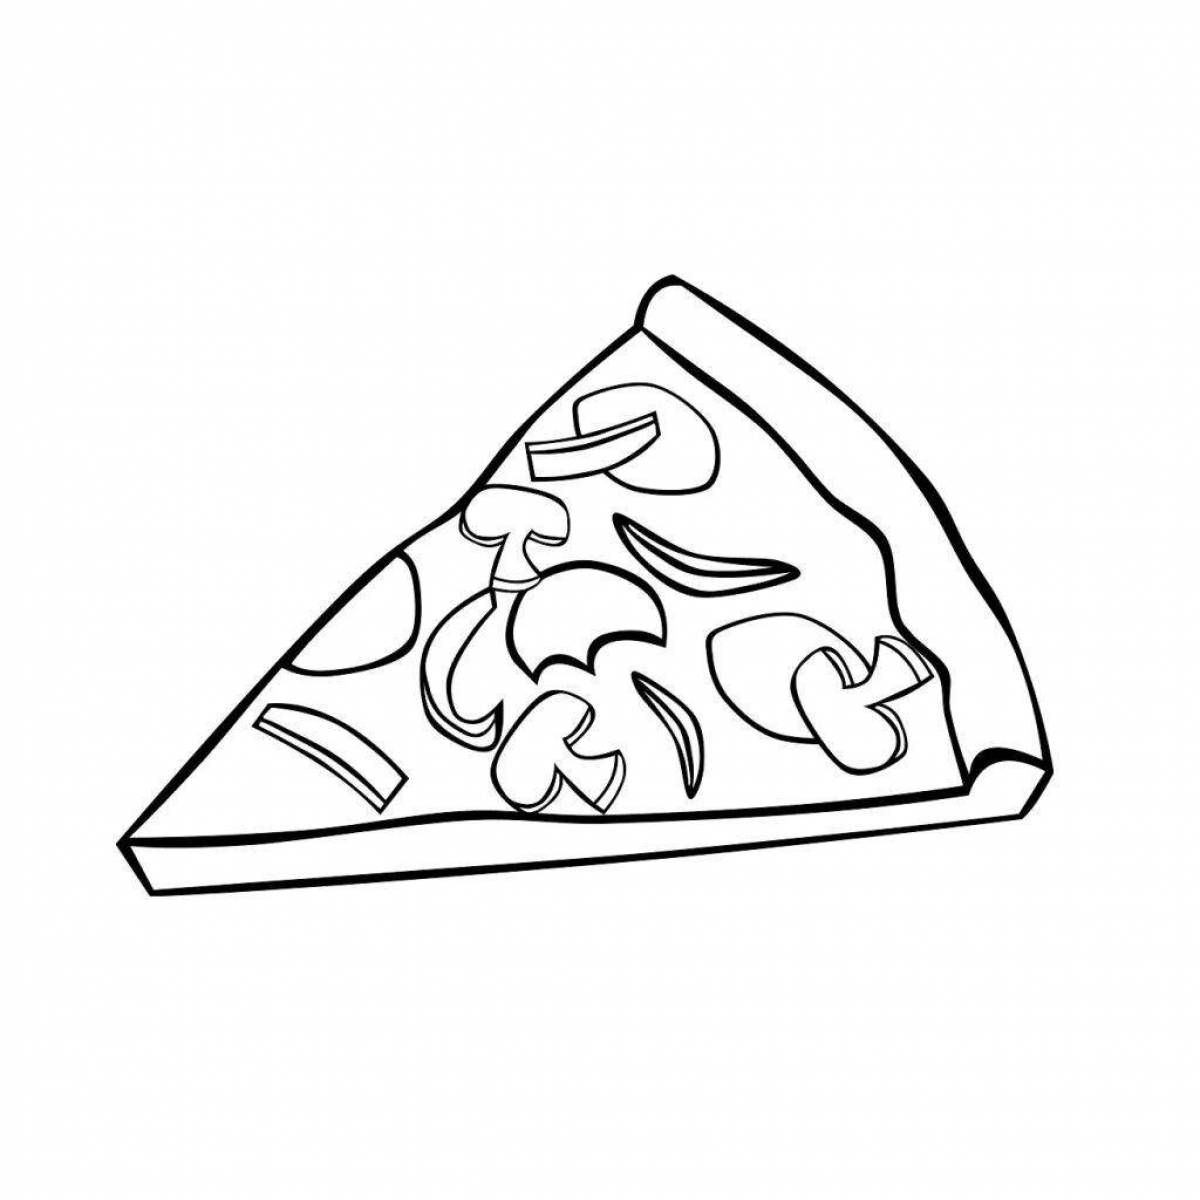 Tasty coloring pizza slice